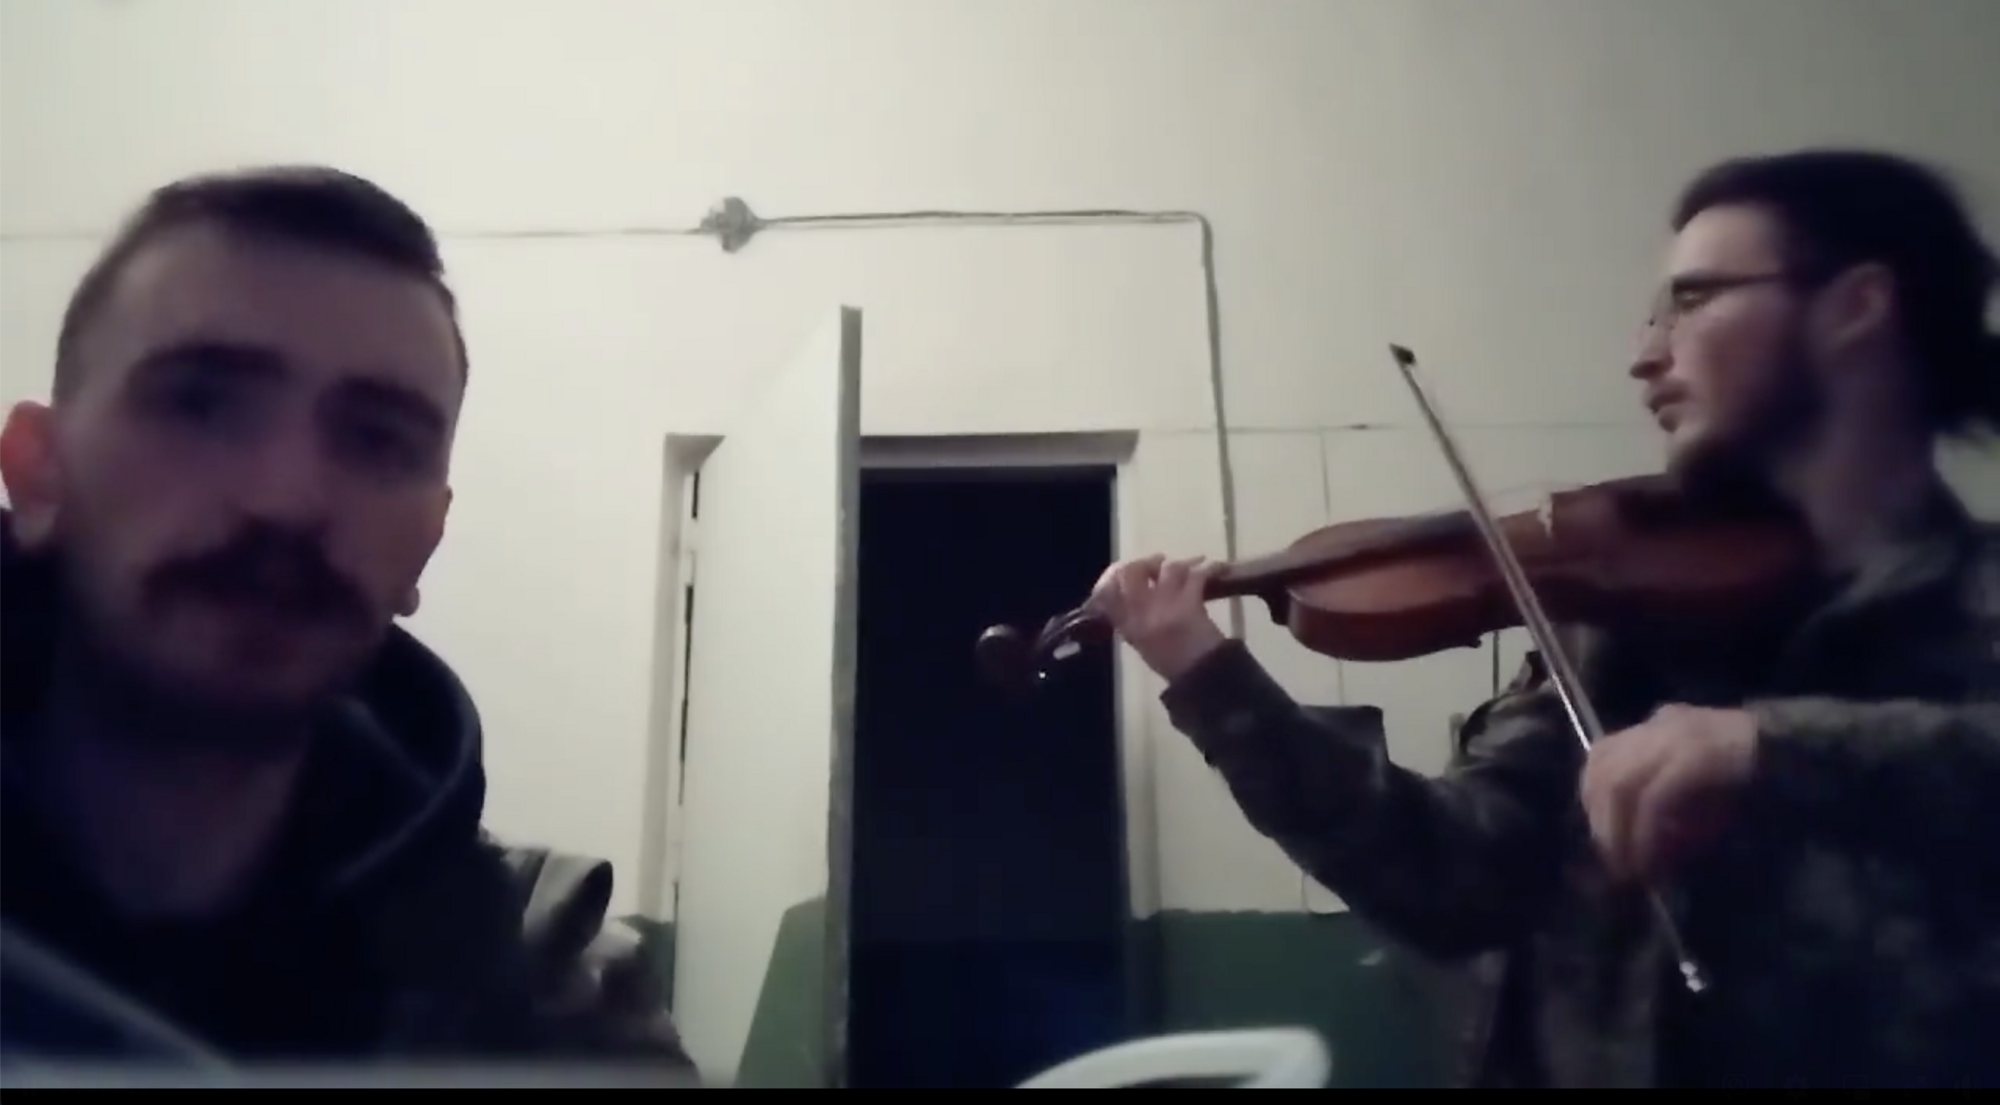 Побратими захоплювалися його талантом: на війні загинув молодий скрипаль Давид Якушин